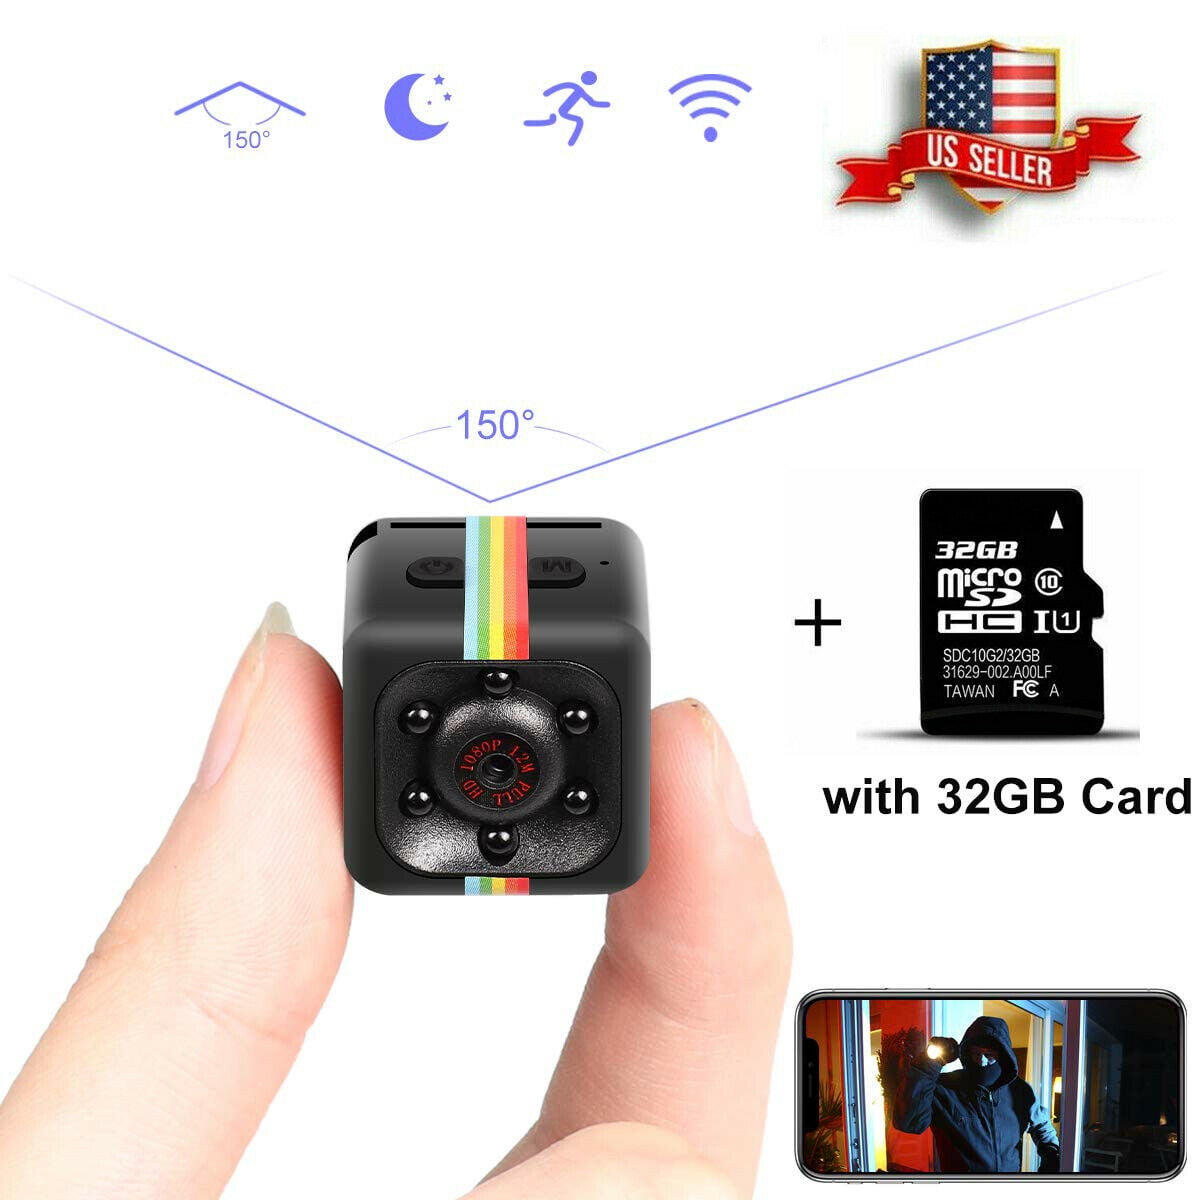 Small Portable Camera